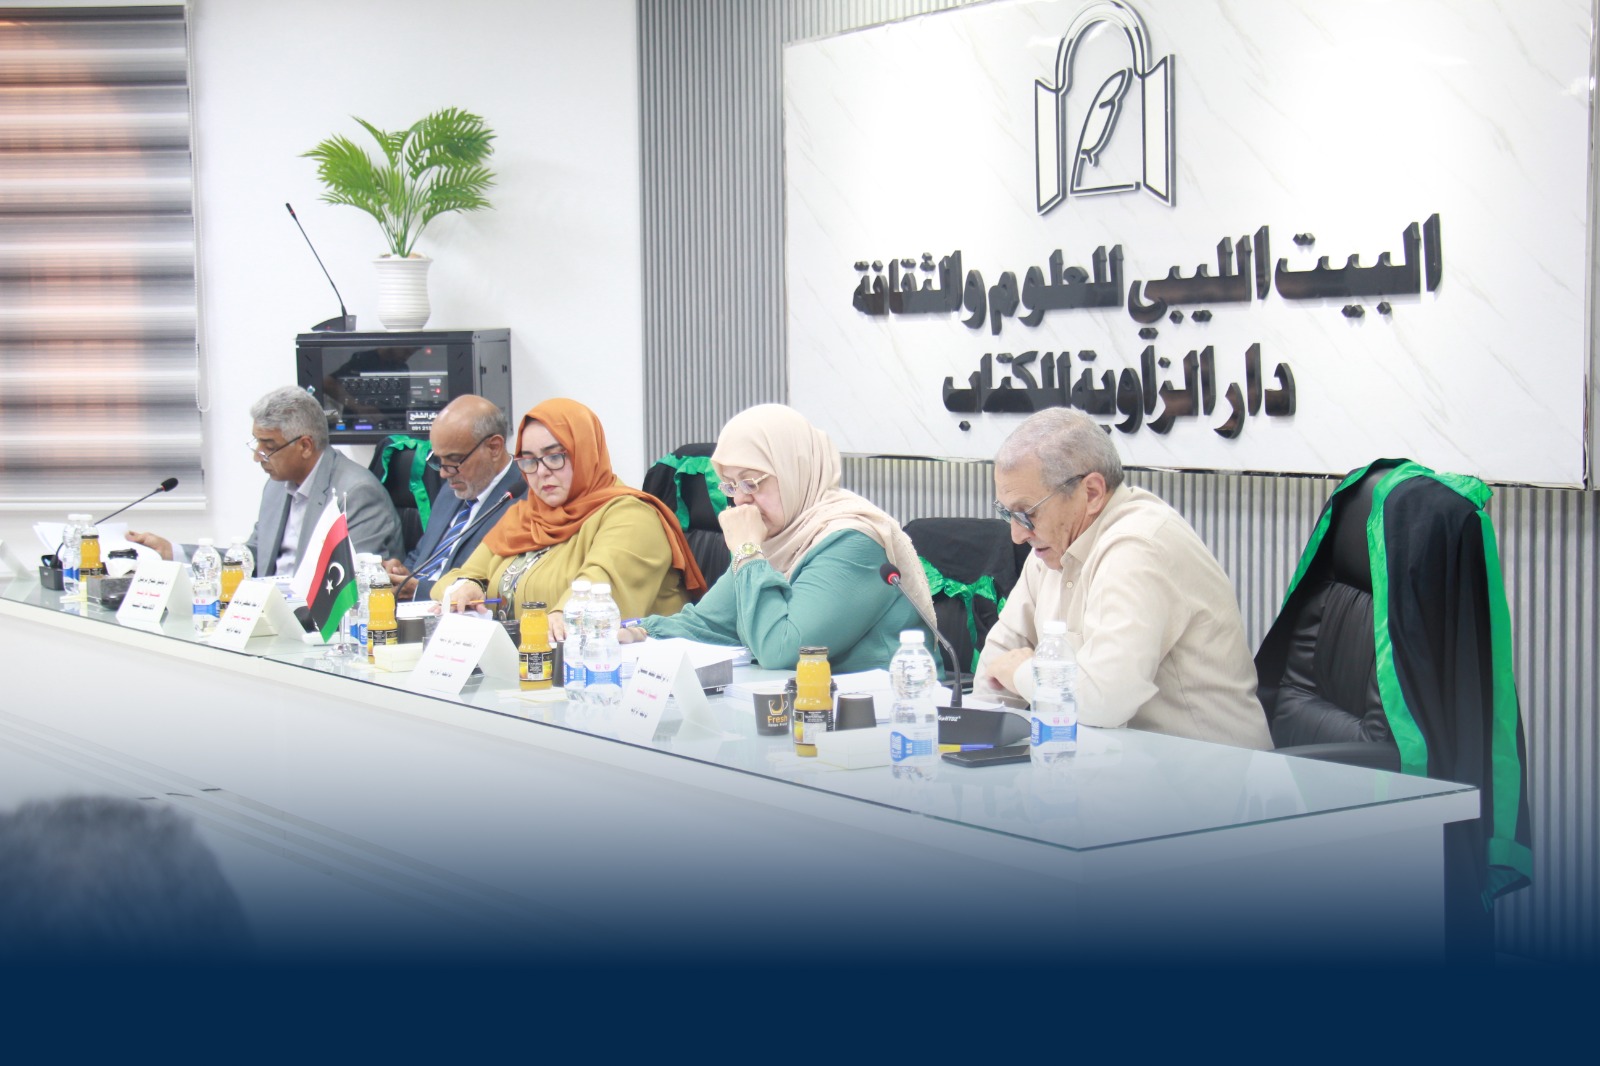 لقاء مشترك بين البيت الليبى للثقافة والعلوم وجامعة القمة الحديثة  .